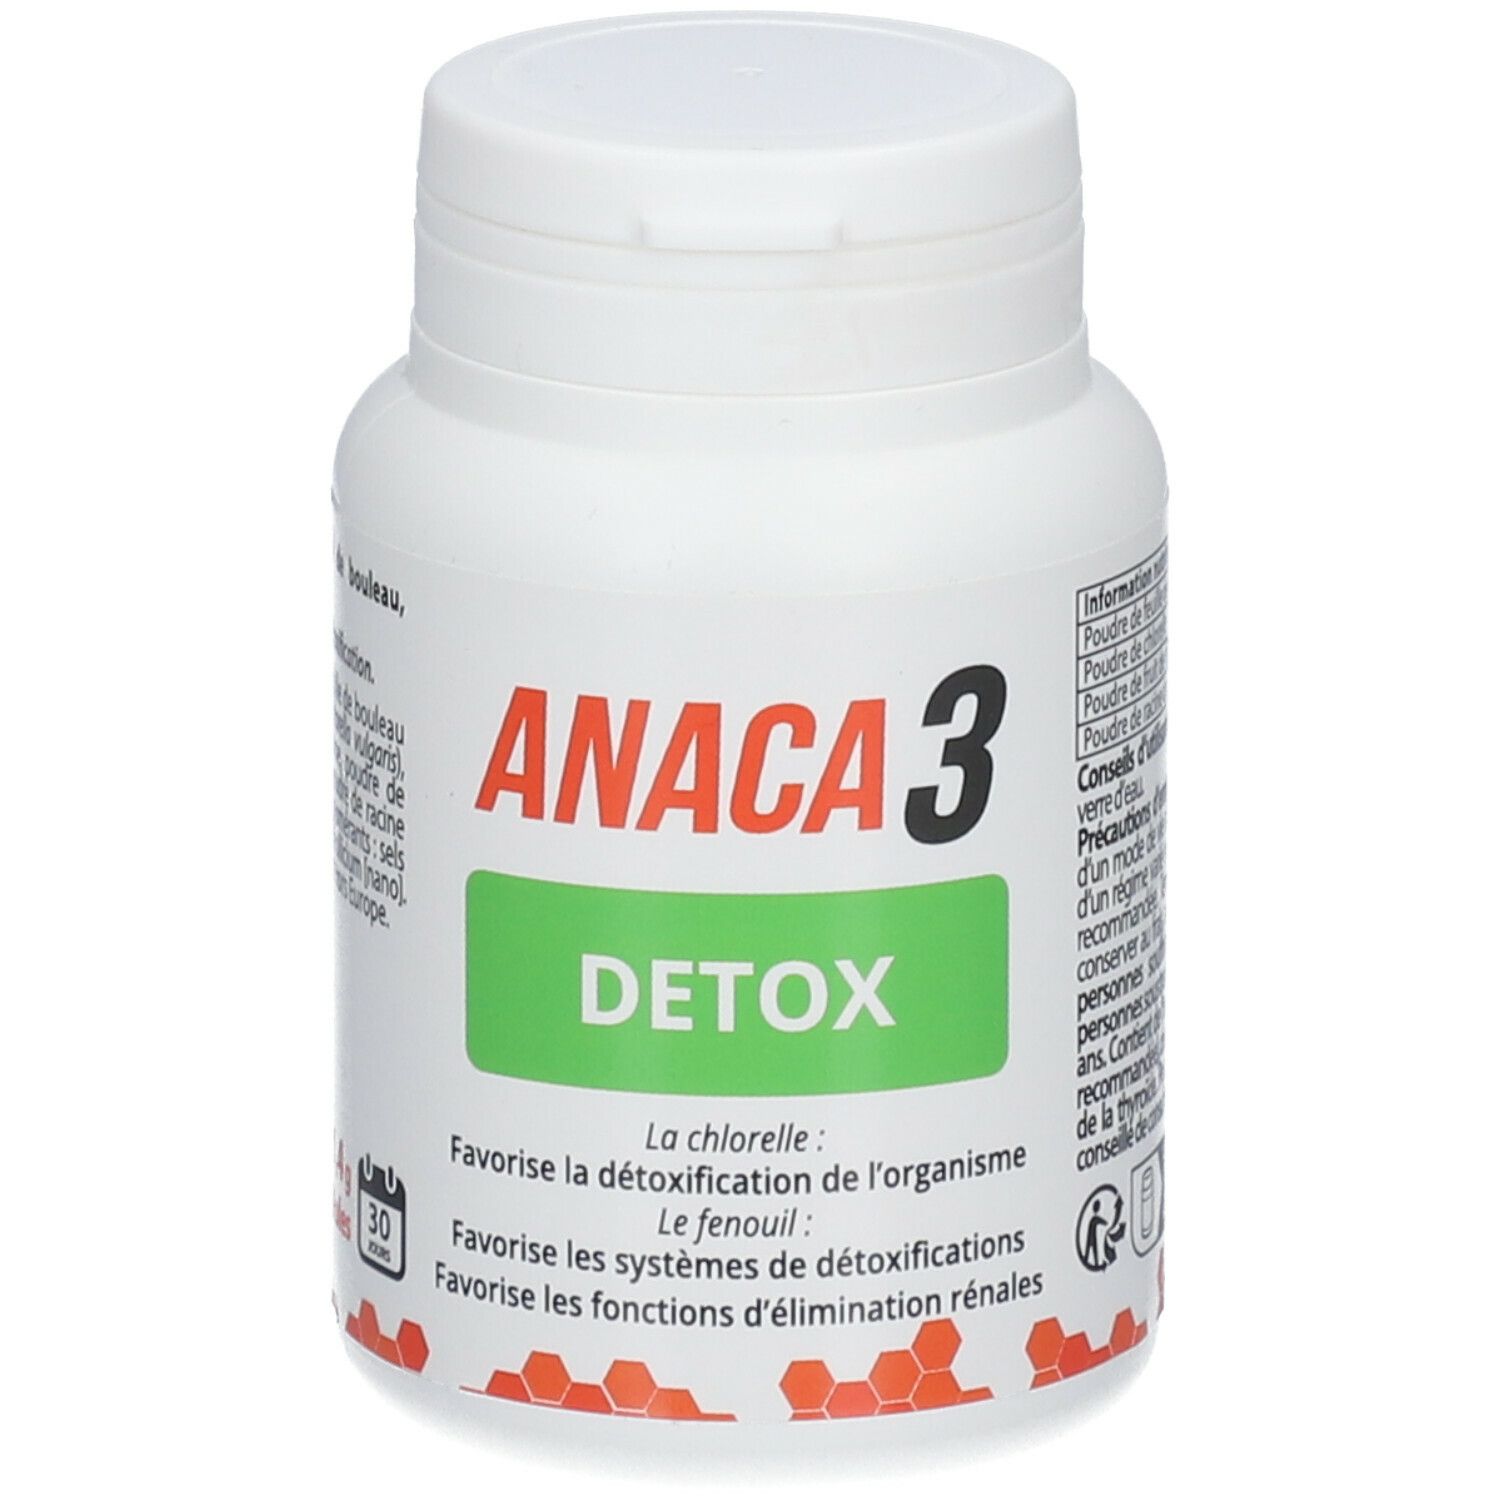 Anaca3 Detox